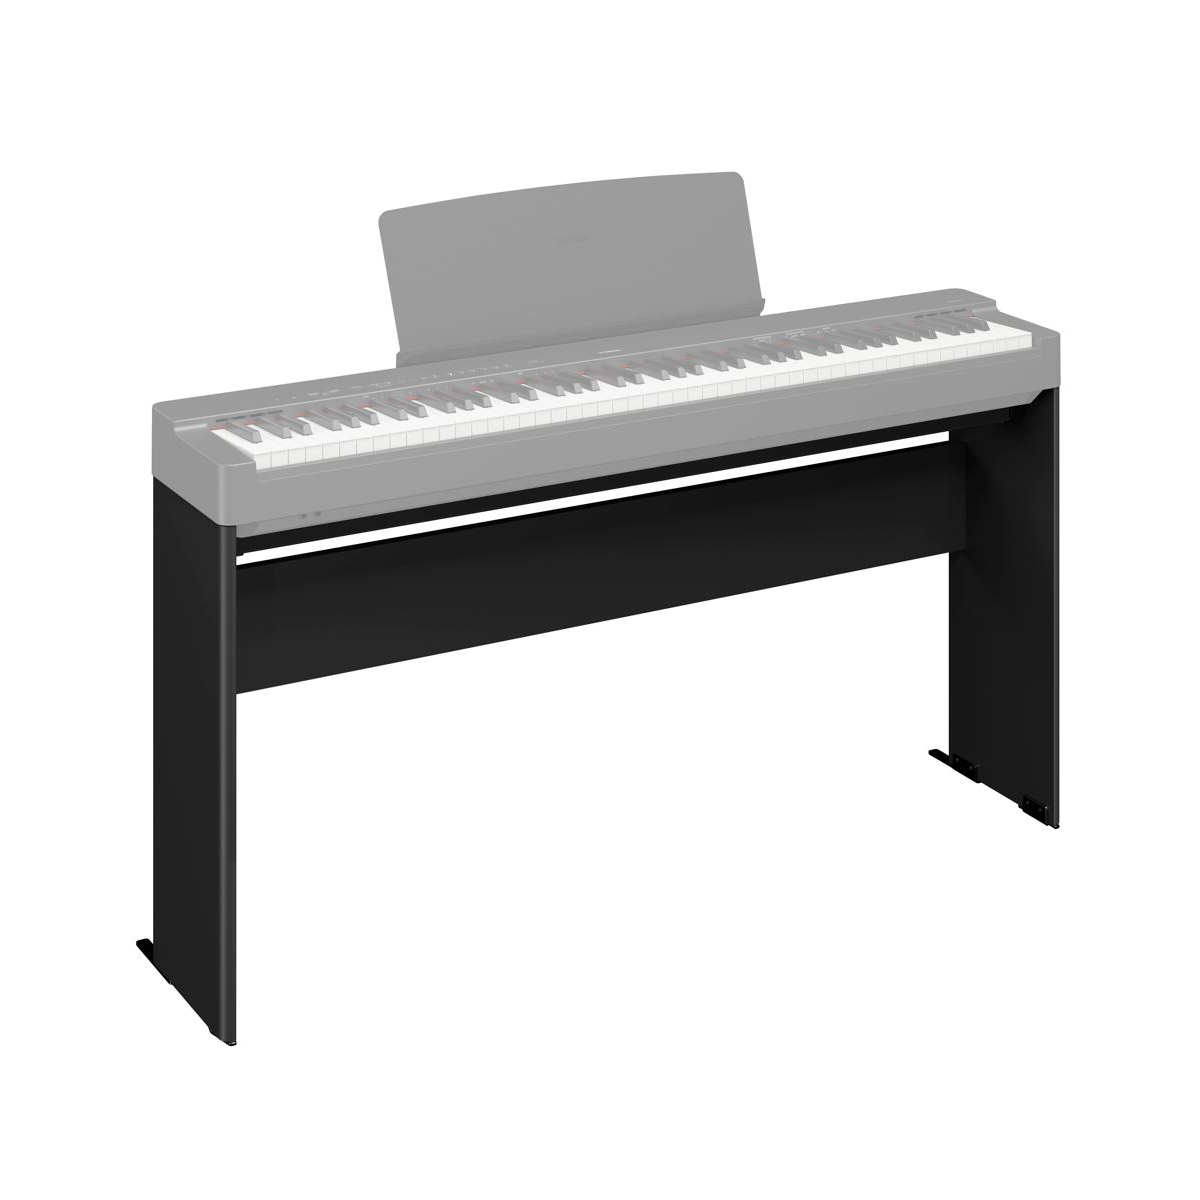 Instruments à clavier - Claviers - Instruments de musique - Produits -  Yamaha - Canada - Français